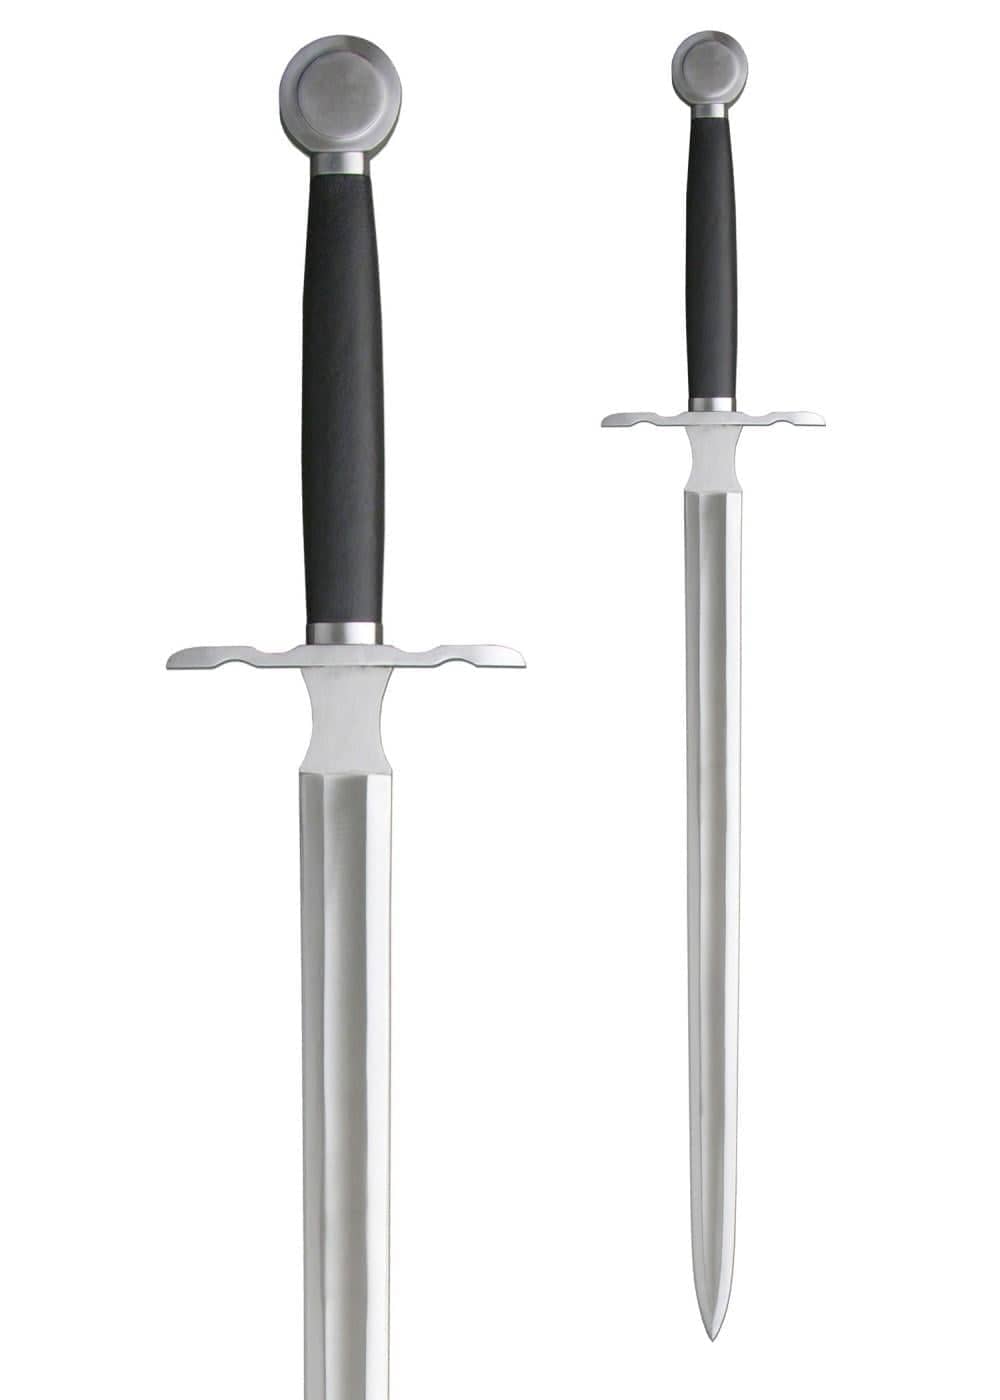 HN-SH2365 espada medieval del siglo XVI - Espadas y Más